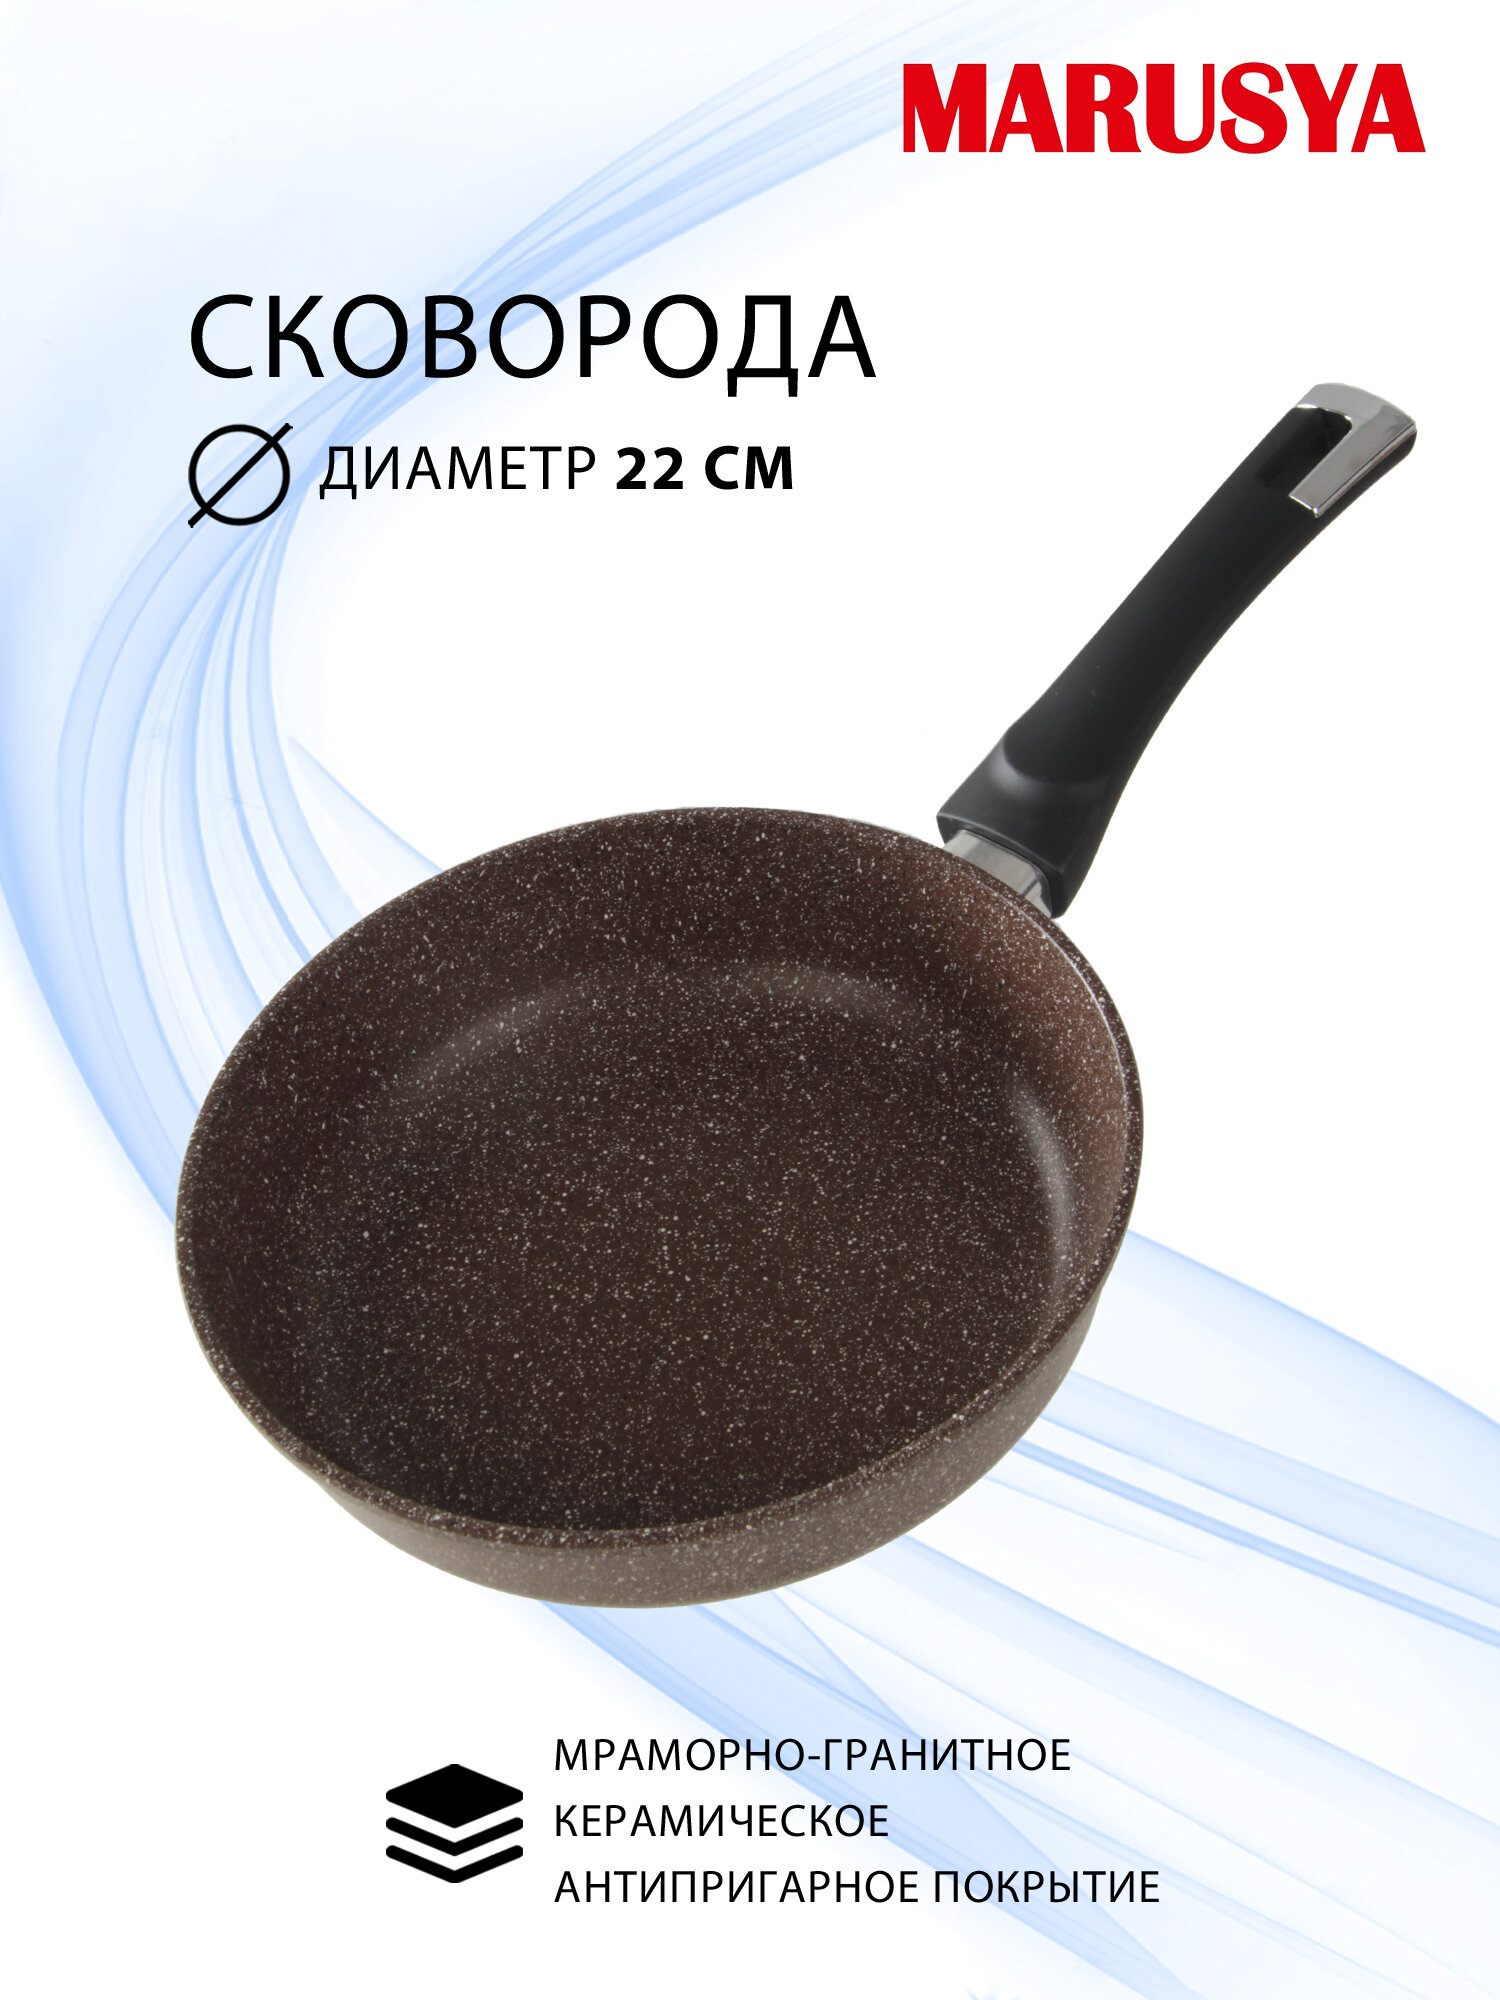 Сковорода 22 см глубокая с антипригарным покрытием GREBLON с бакелитовой ручкой MARUSYA